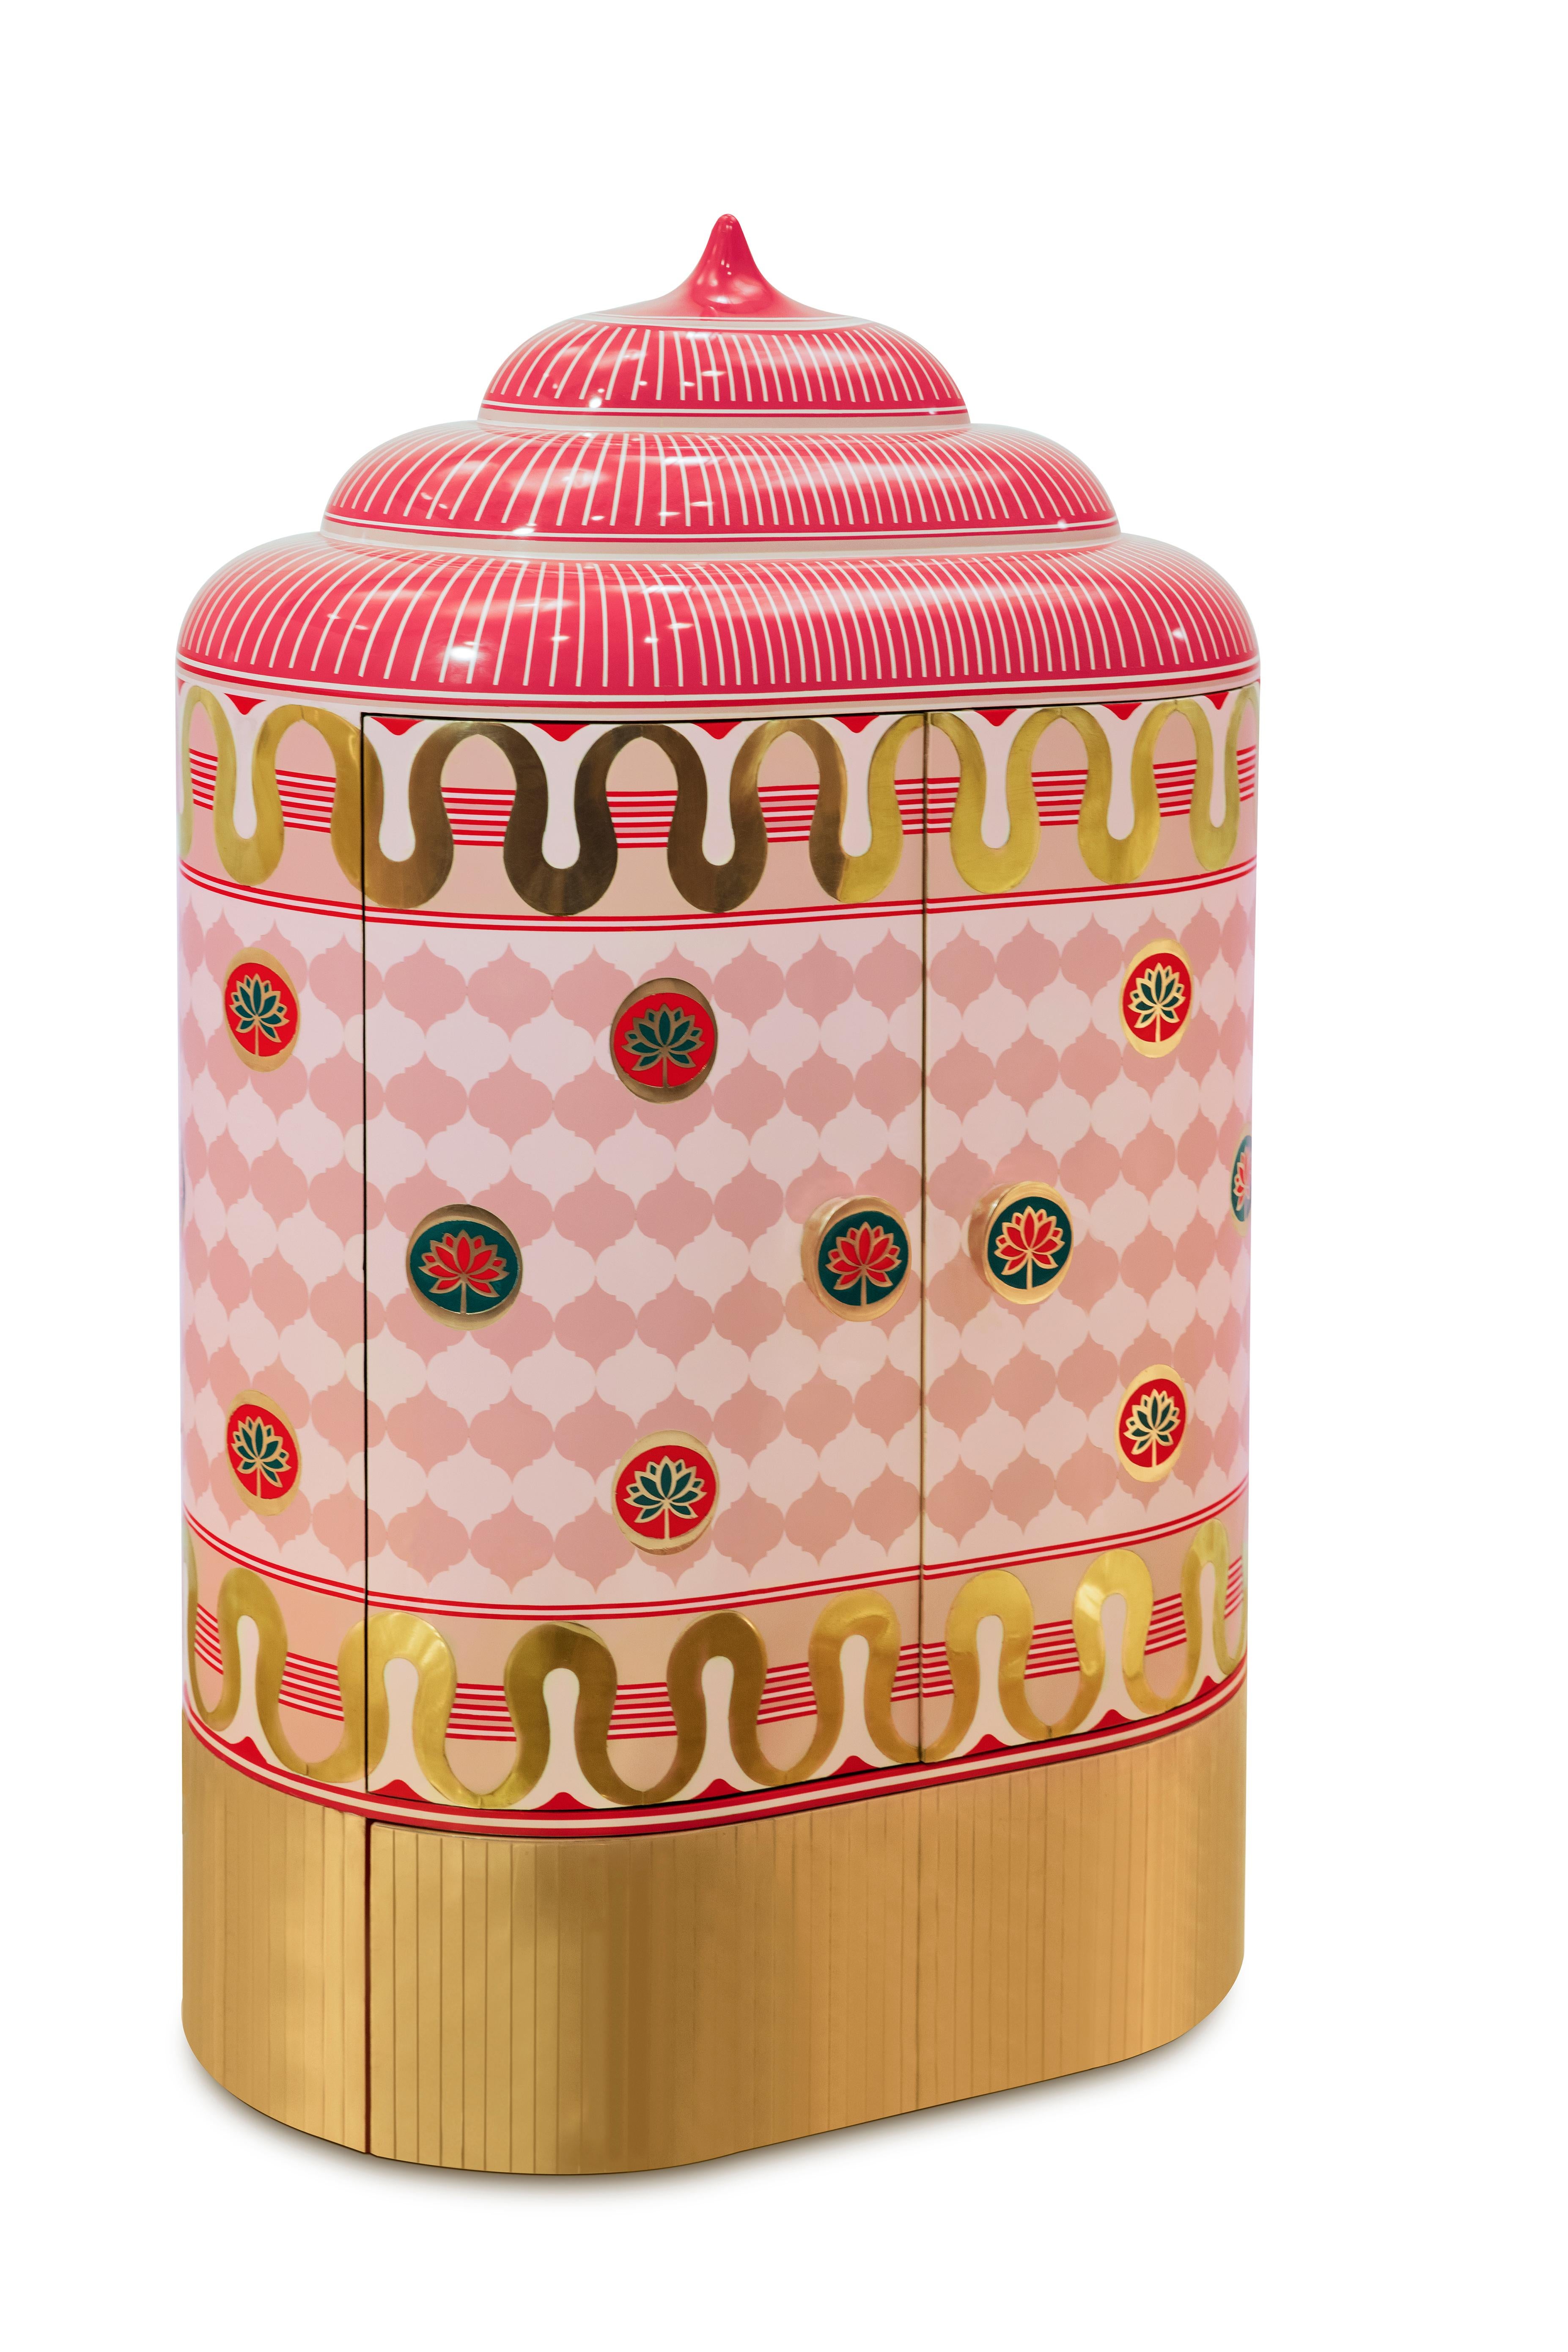 L'armoire de rangement Lotus Sanctum Pink avec incrustation en laiton de Matteo Cibic est une armoire polyvalente inspirée par la pureté du lotus. Les murs et les piliers en laiton bruni anticipent une révélation lumineuse. Disponible en deux